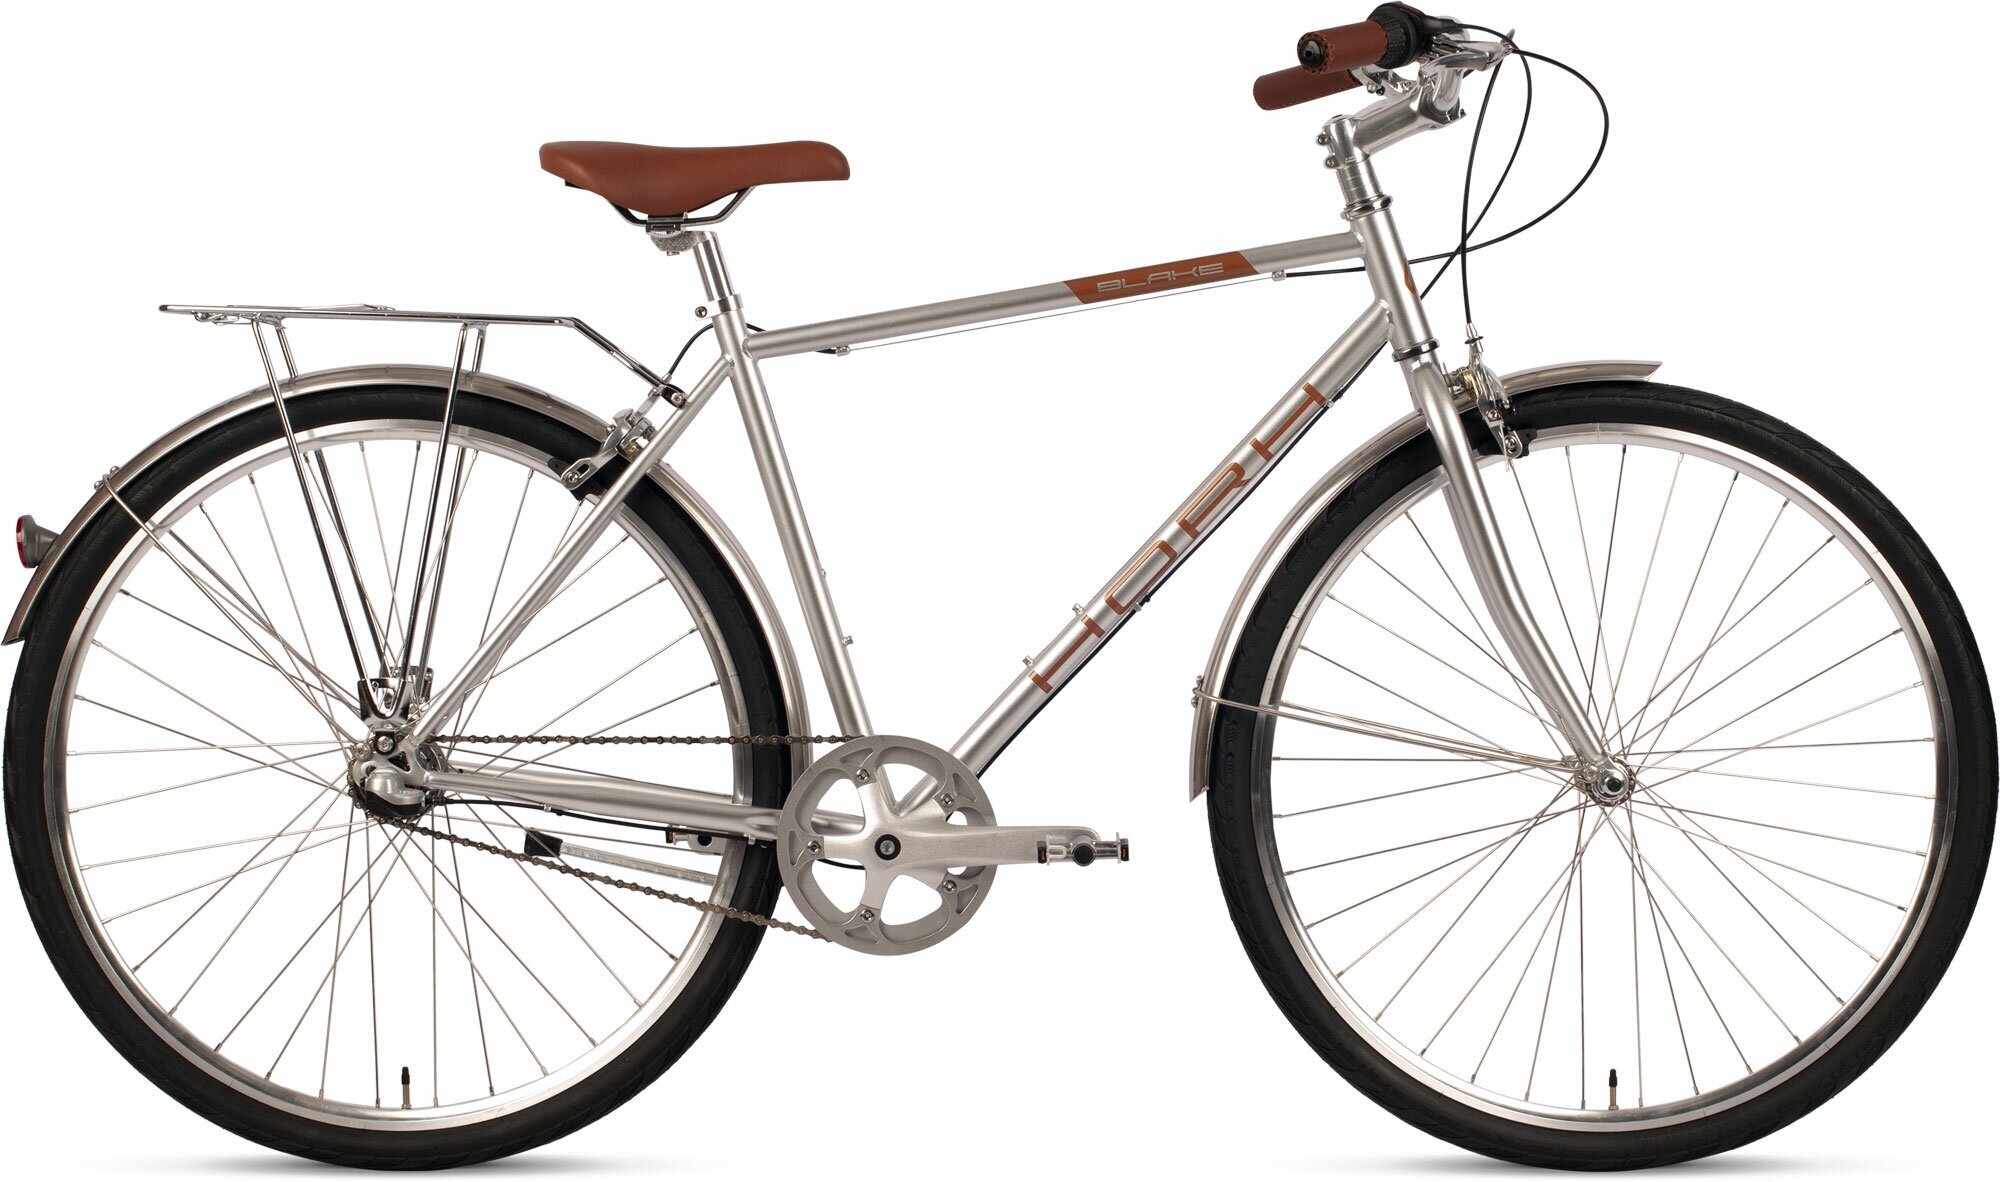 Велосипед городской HORH BLAKE (2023), ригид, взрослый, мужской, стальная рама, оборудование Shimano Nexus, 3 скорости, ободные тормоза, цвет Silver, серебристый цвет, размер рамы L, для роста 180-190 см